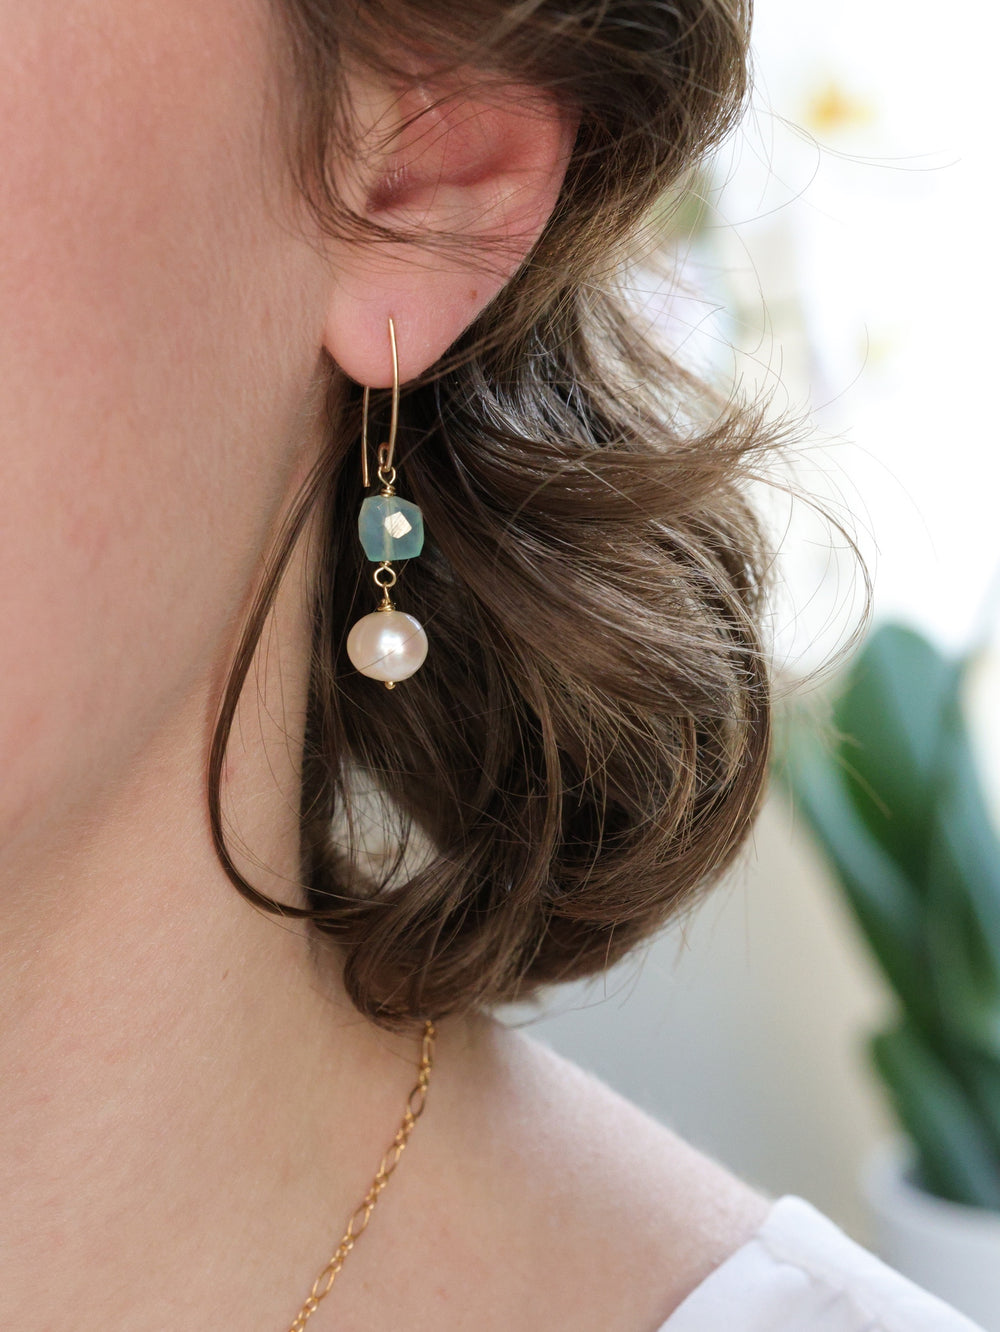 Earrings shown on model